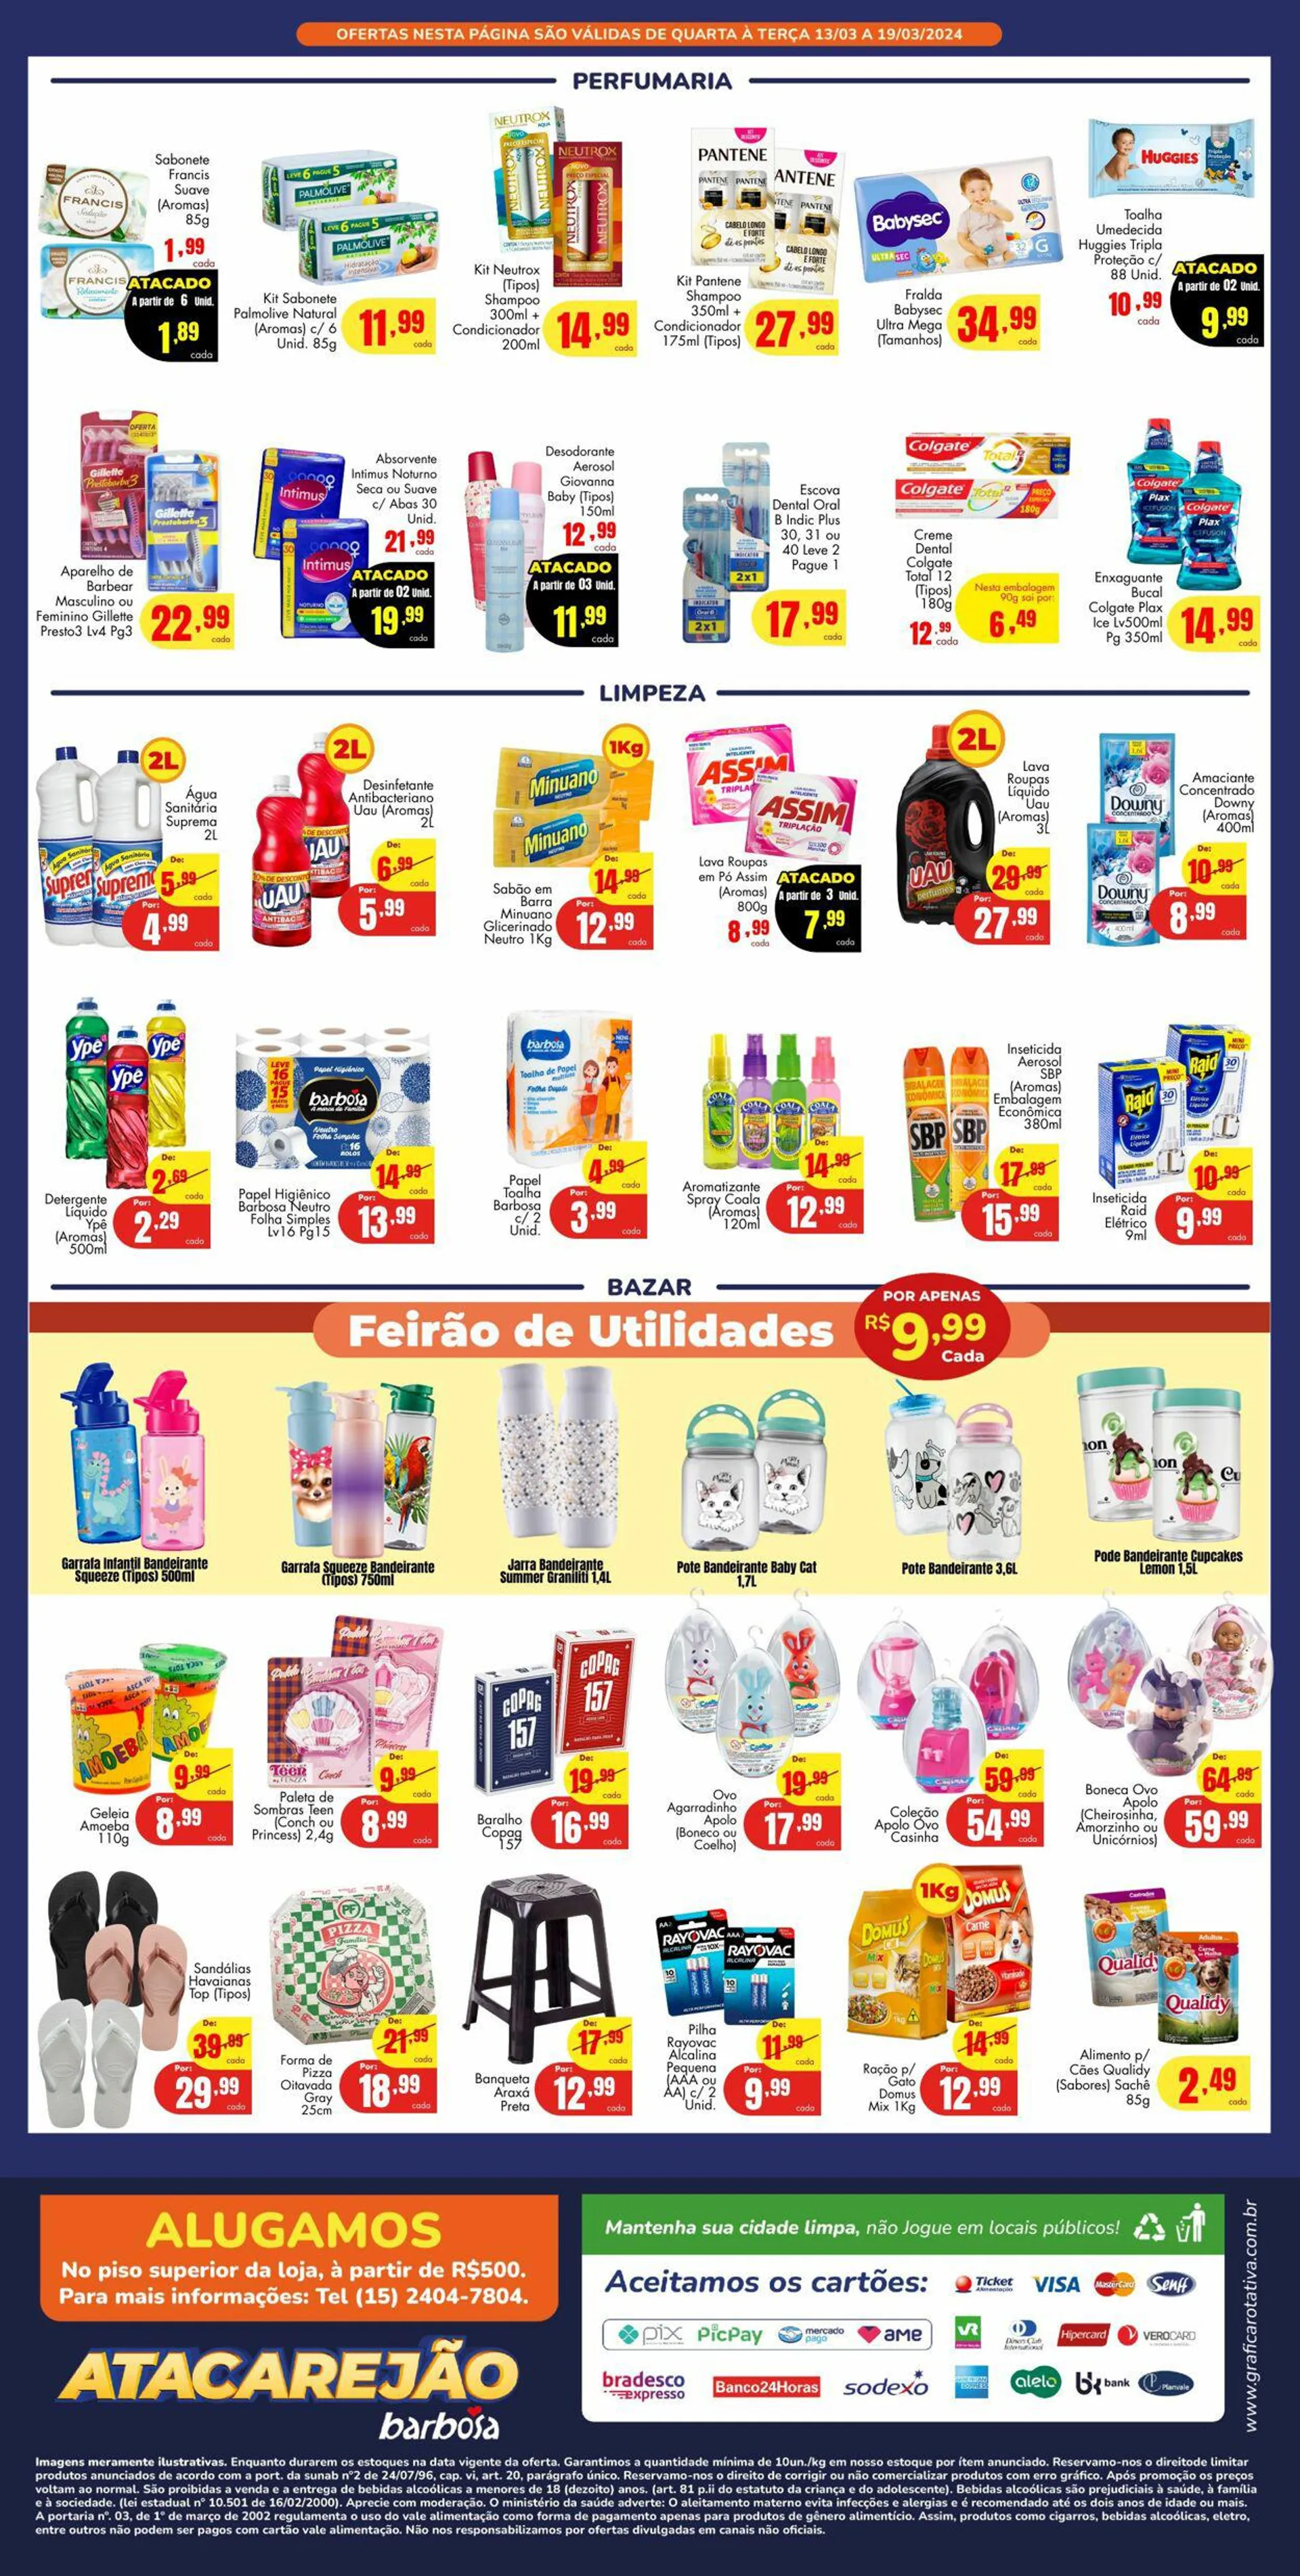 Encarte de Barbosa Supermercados 13 de março até 19 de março 2024 - Pagina 4